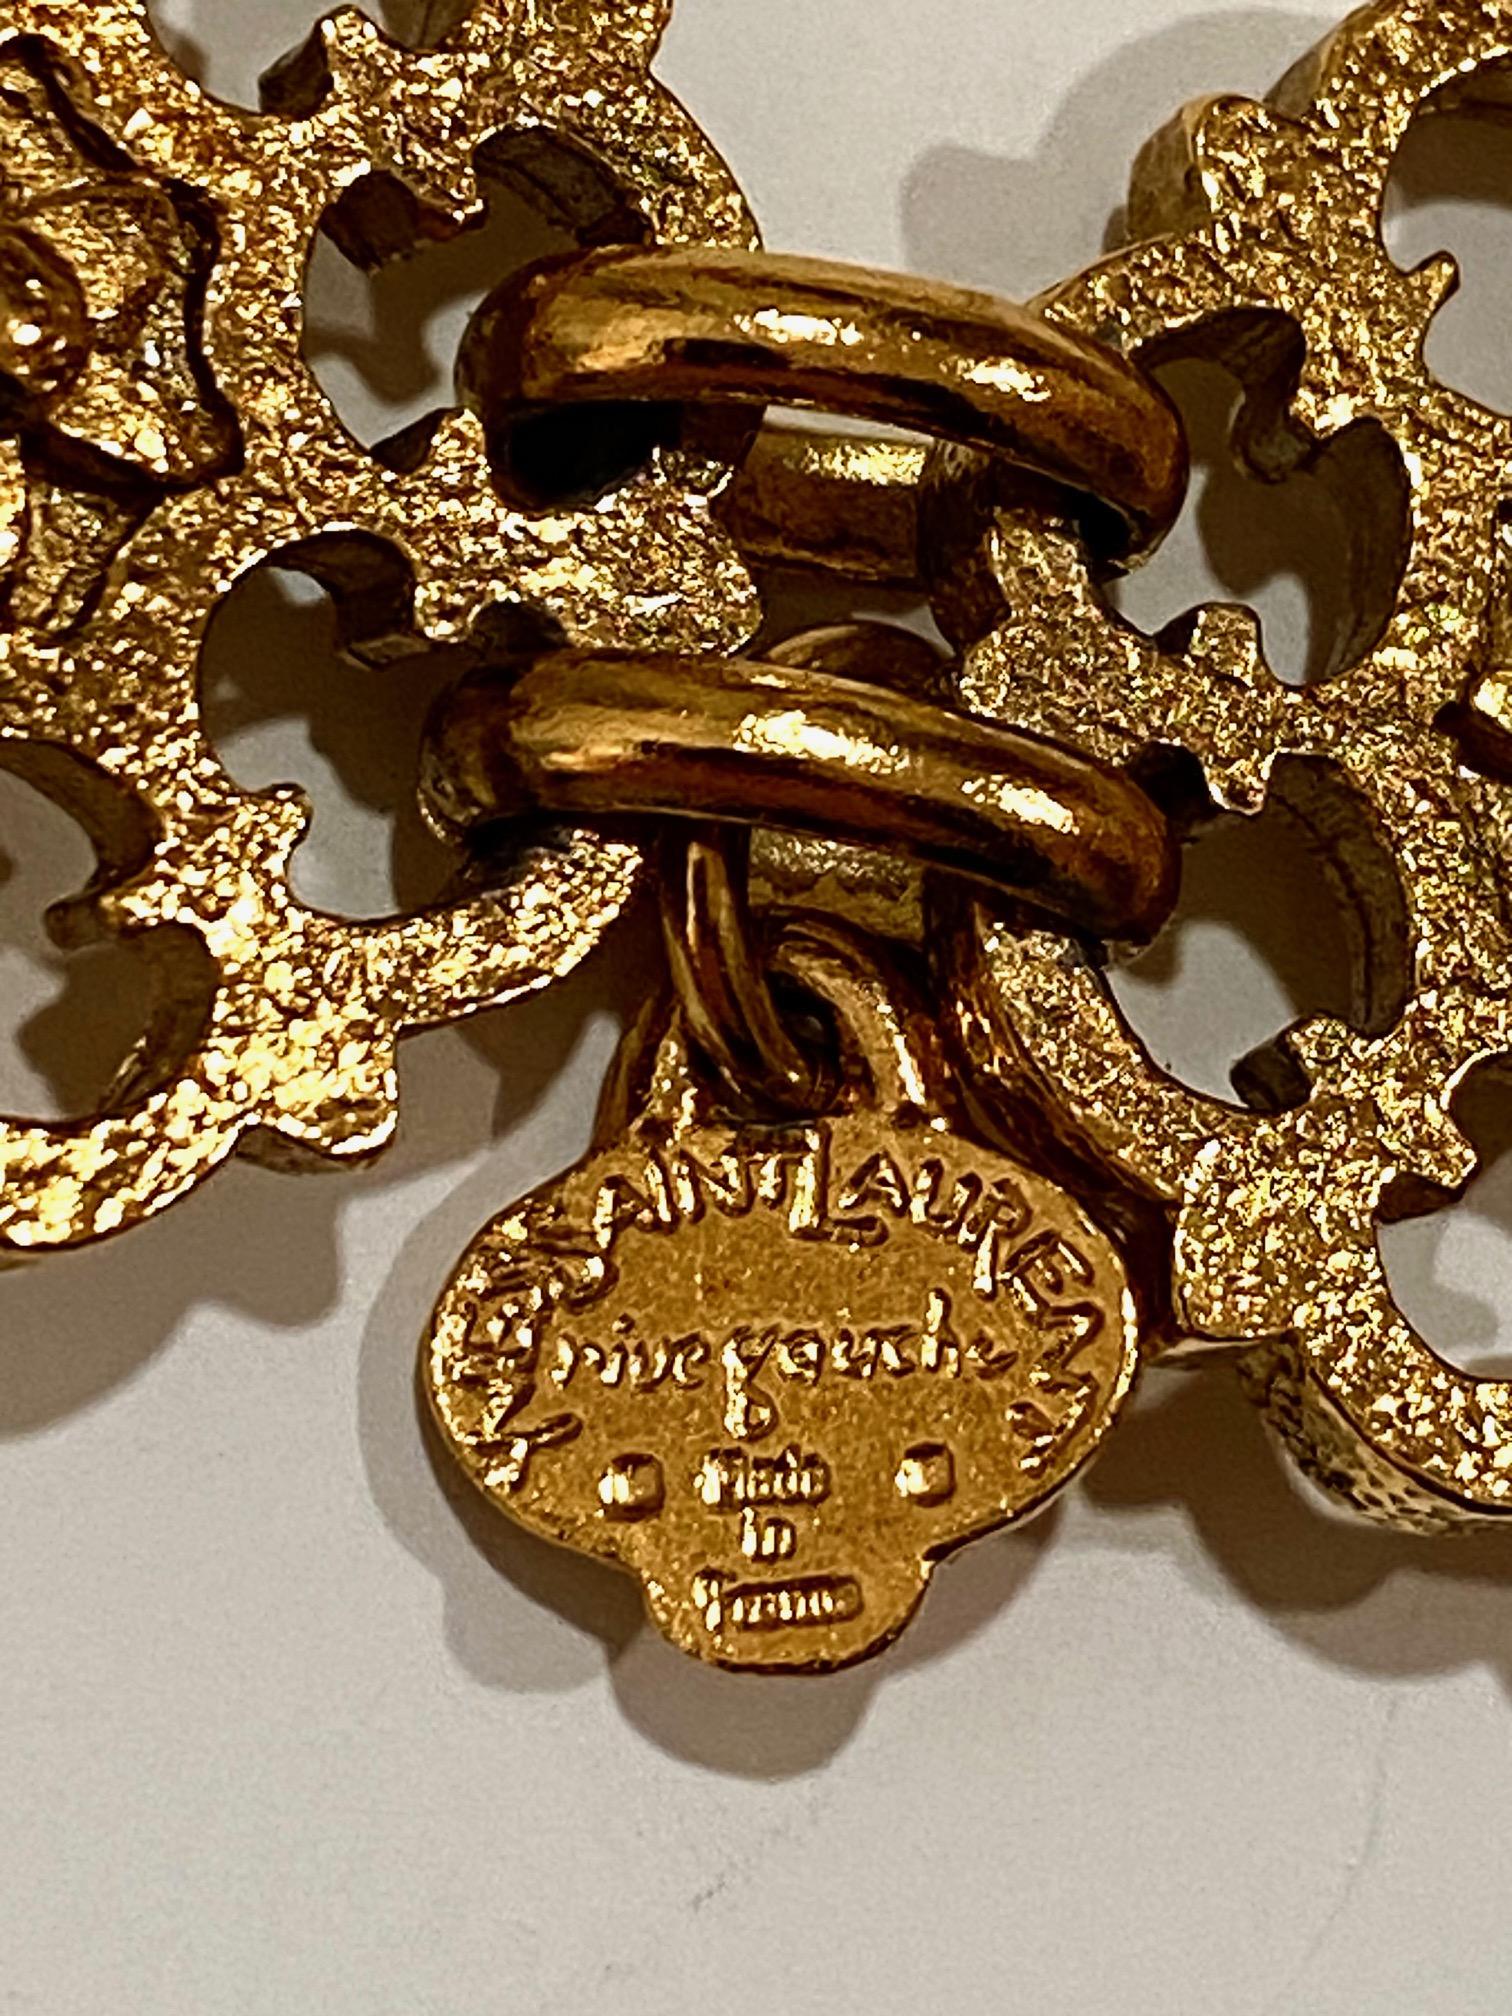 Yves Saint Laurent, Rive Gauche, 1980s Necklace / Belt For Sale 3